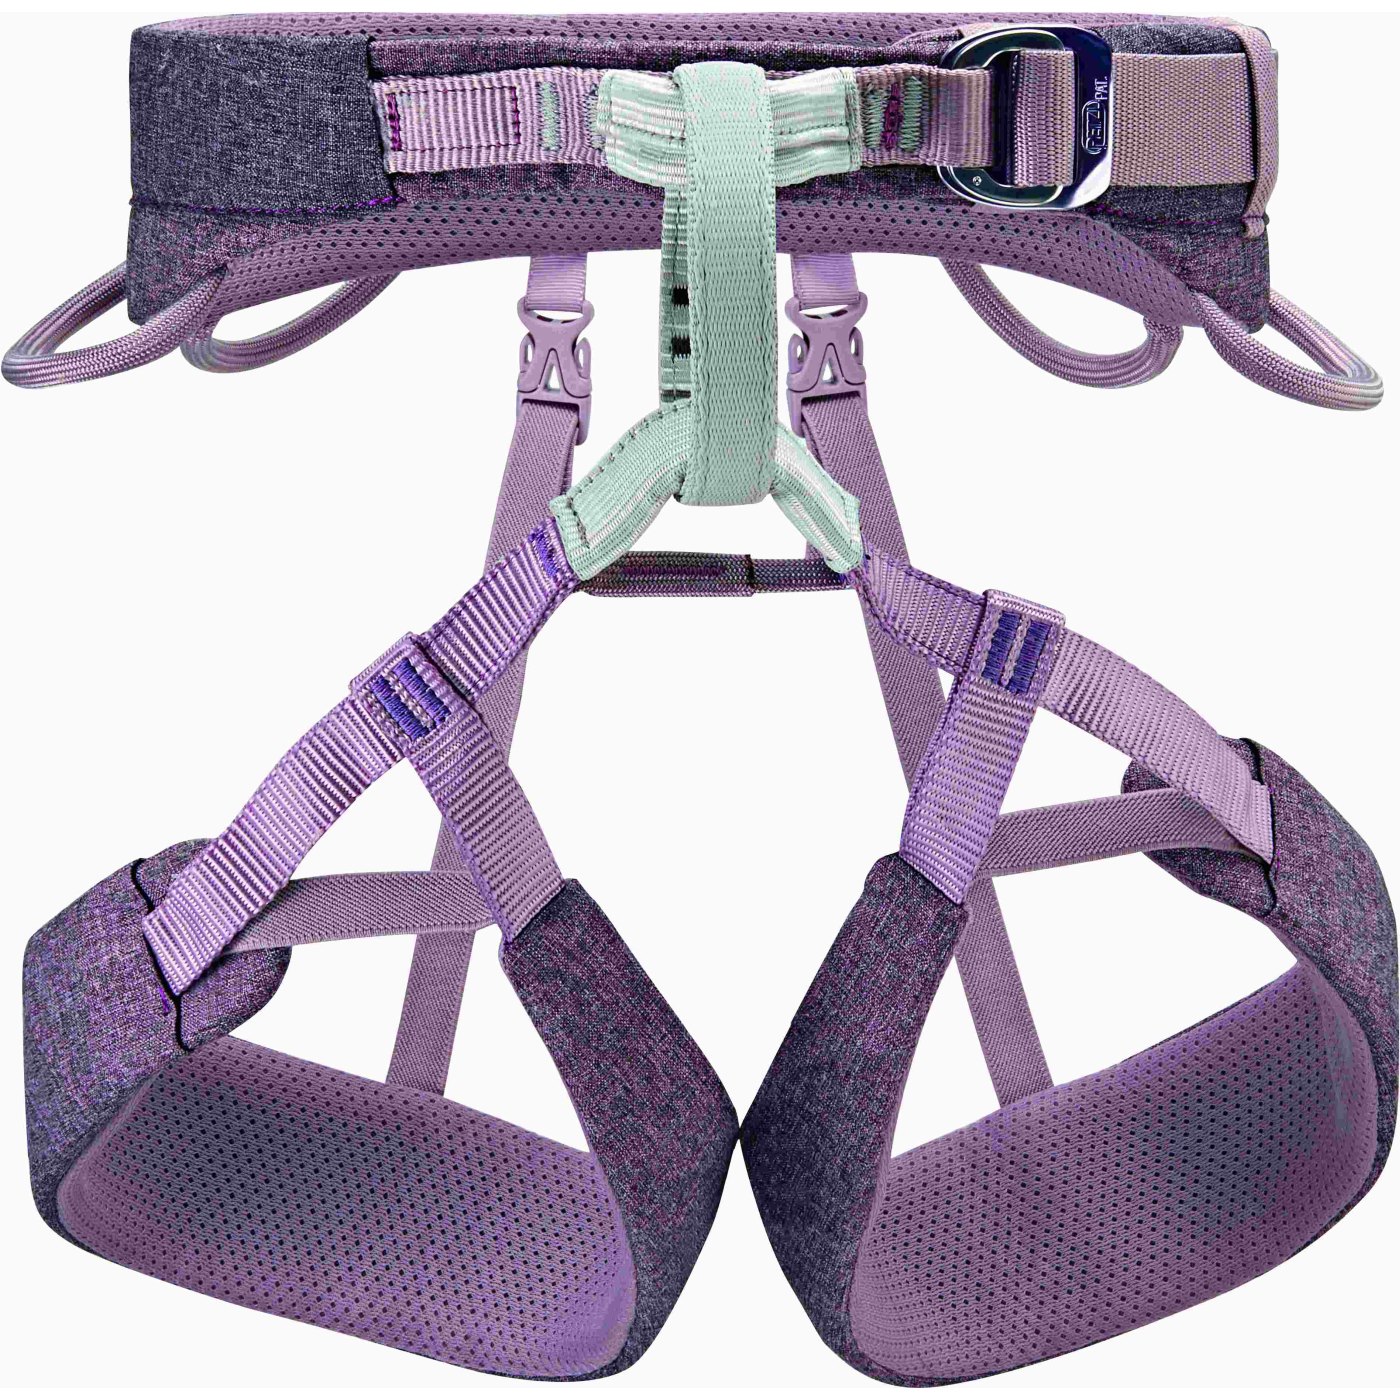 Produktbild von Petzl Selena Damen Klettergurt - violett